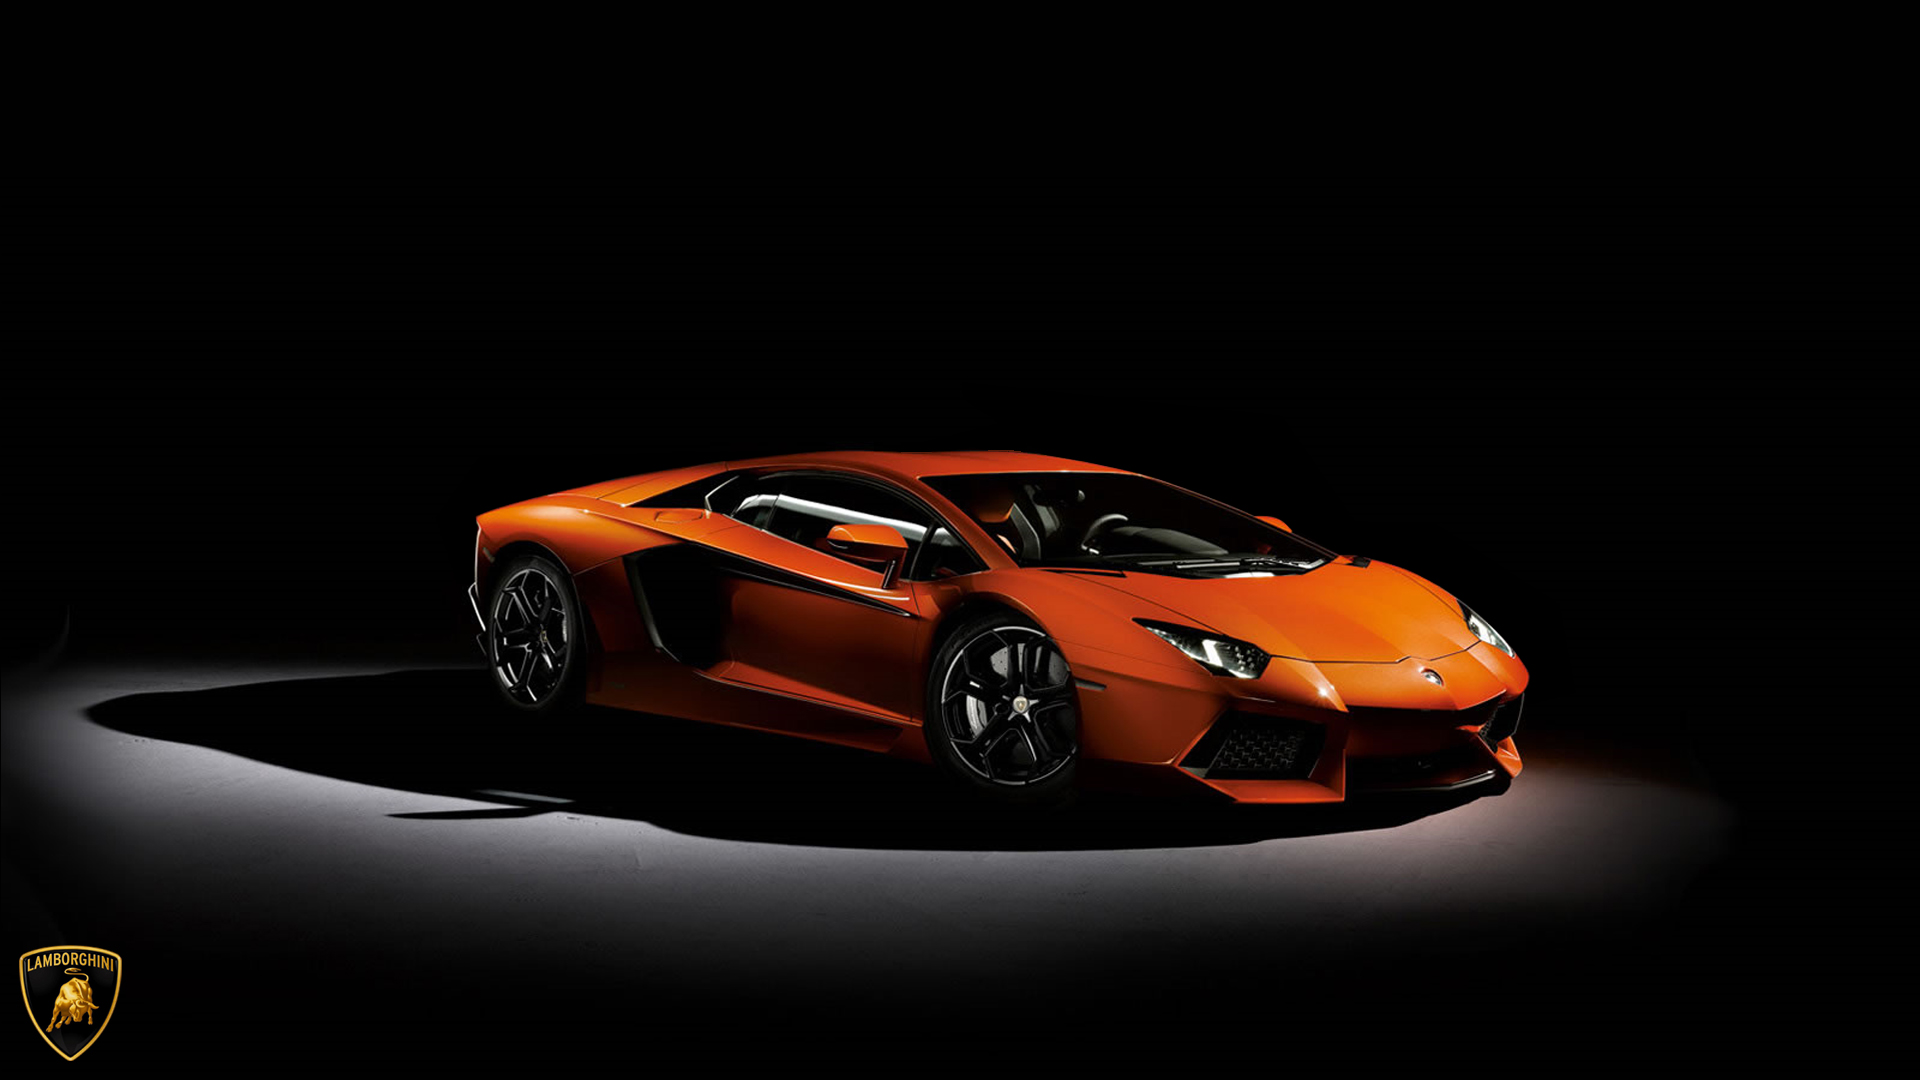 Lamborghini Wallpaper In HD For Desktop And